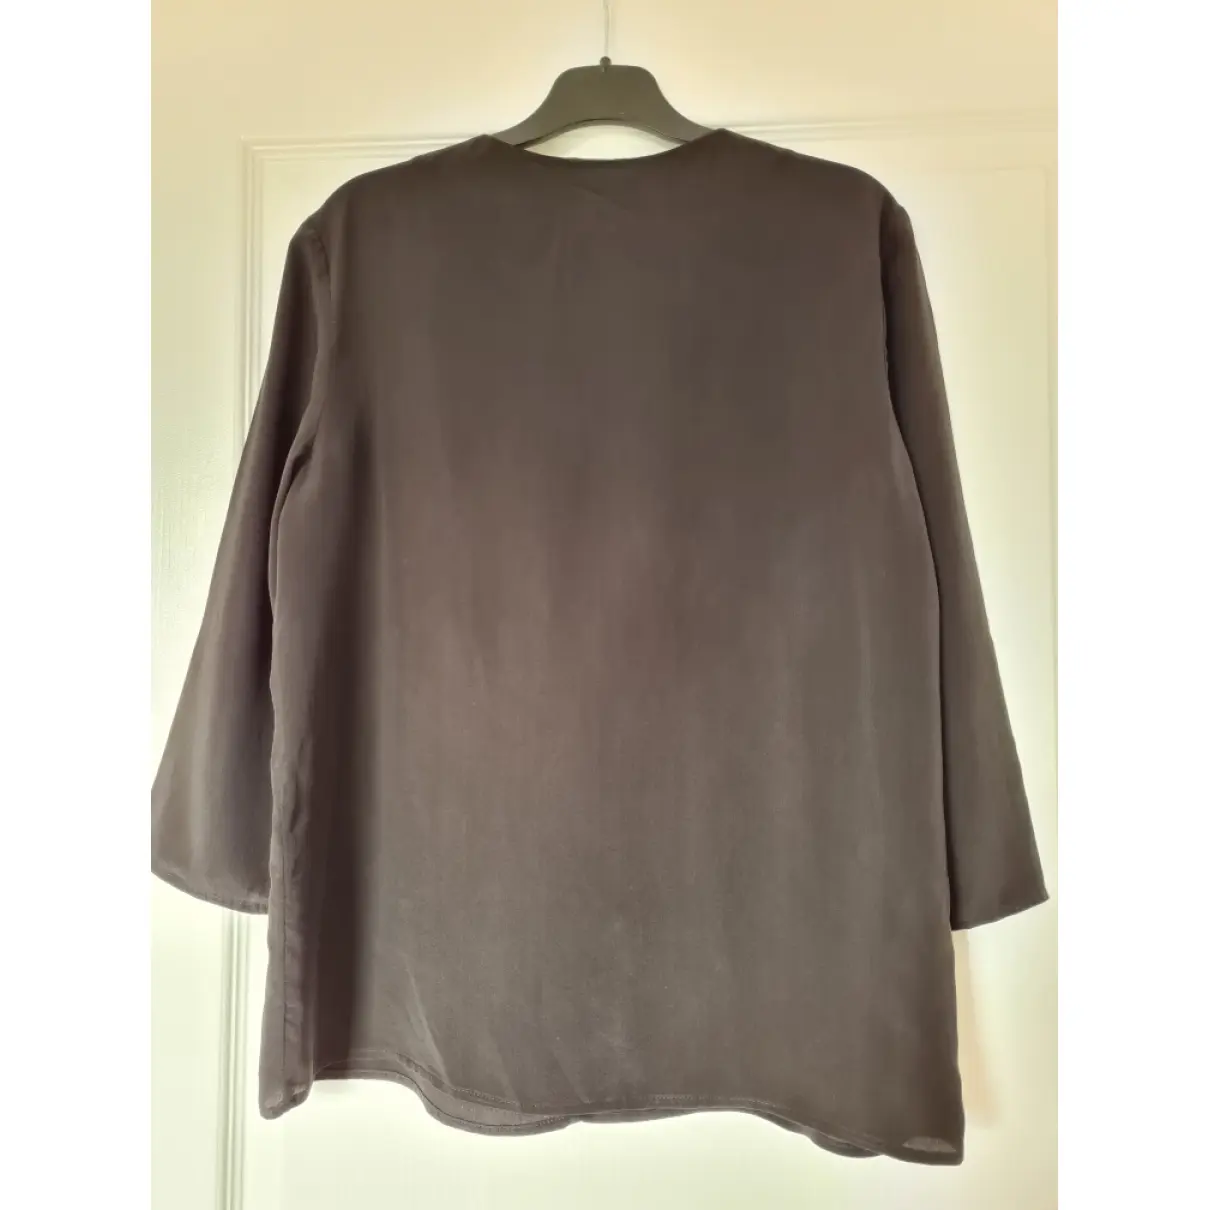 Buy Claudie Pierlot Silk blouse online